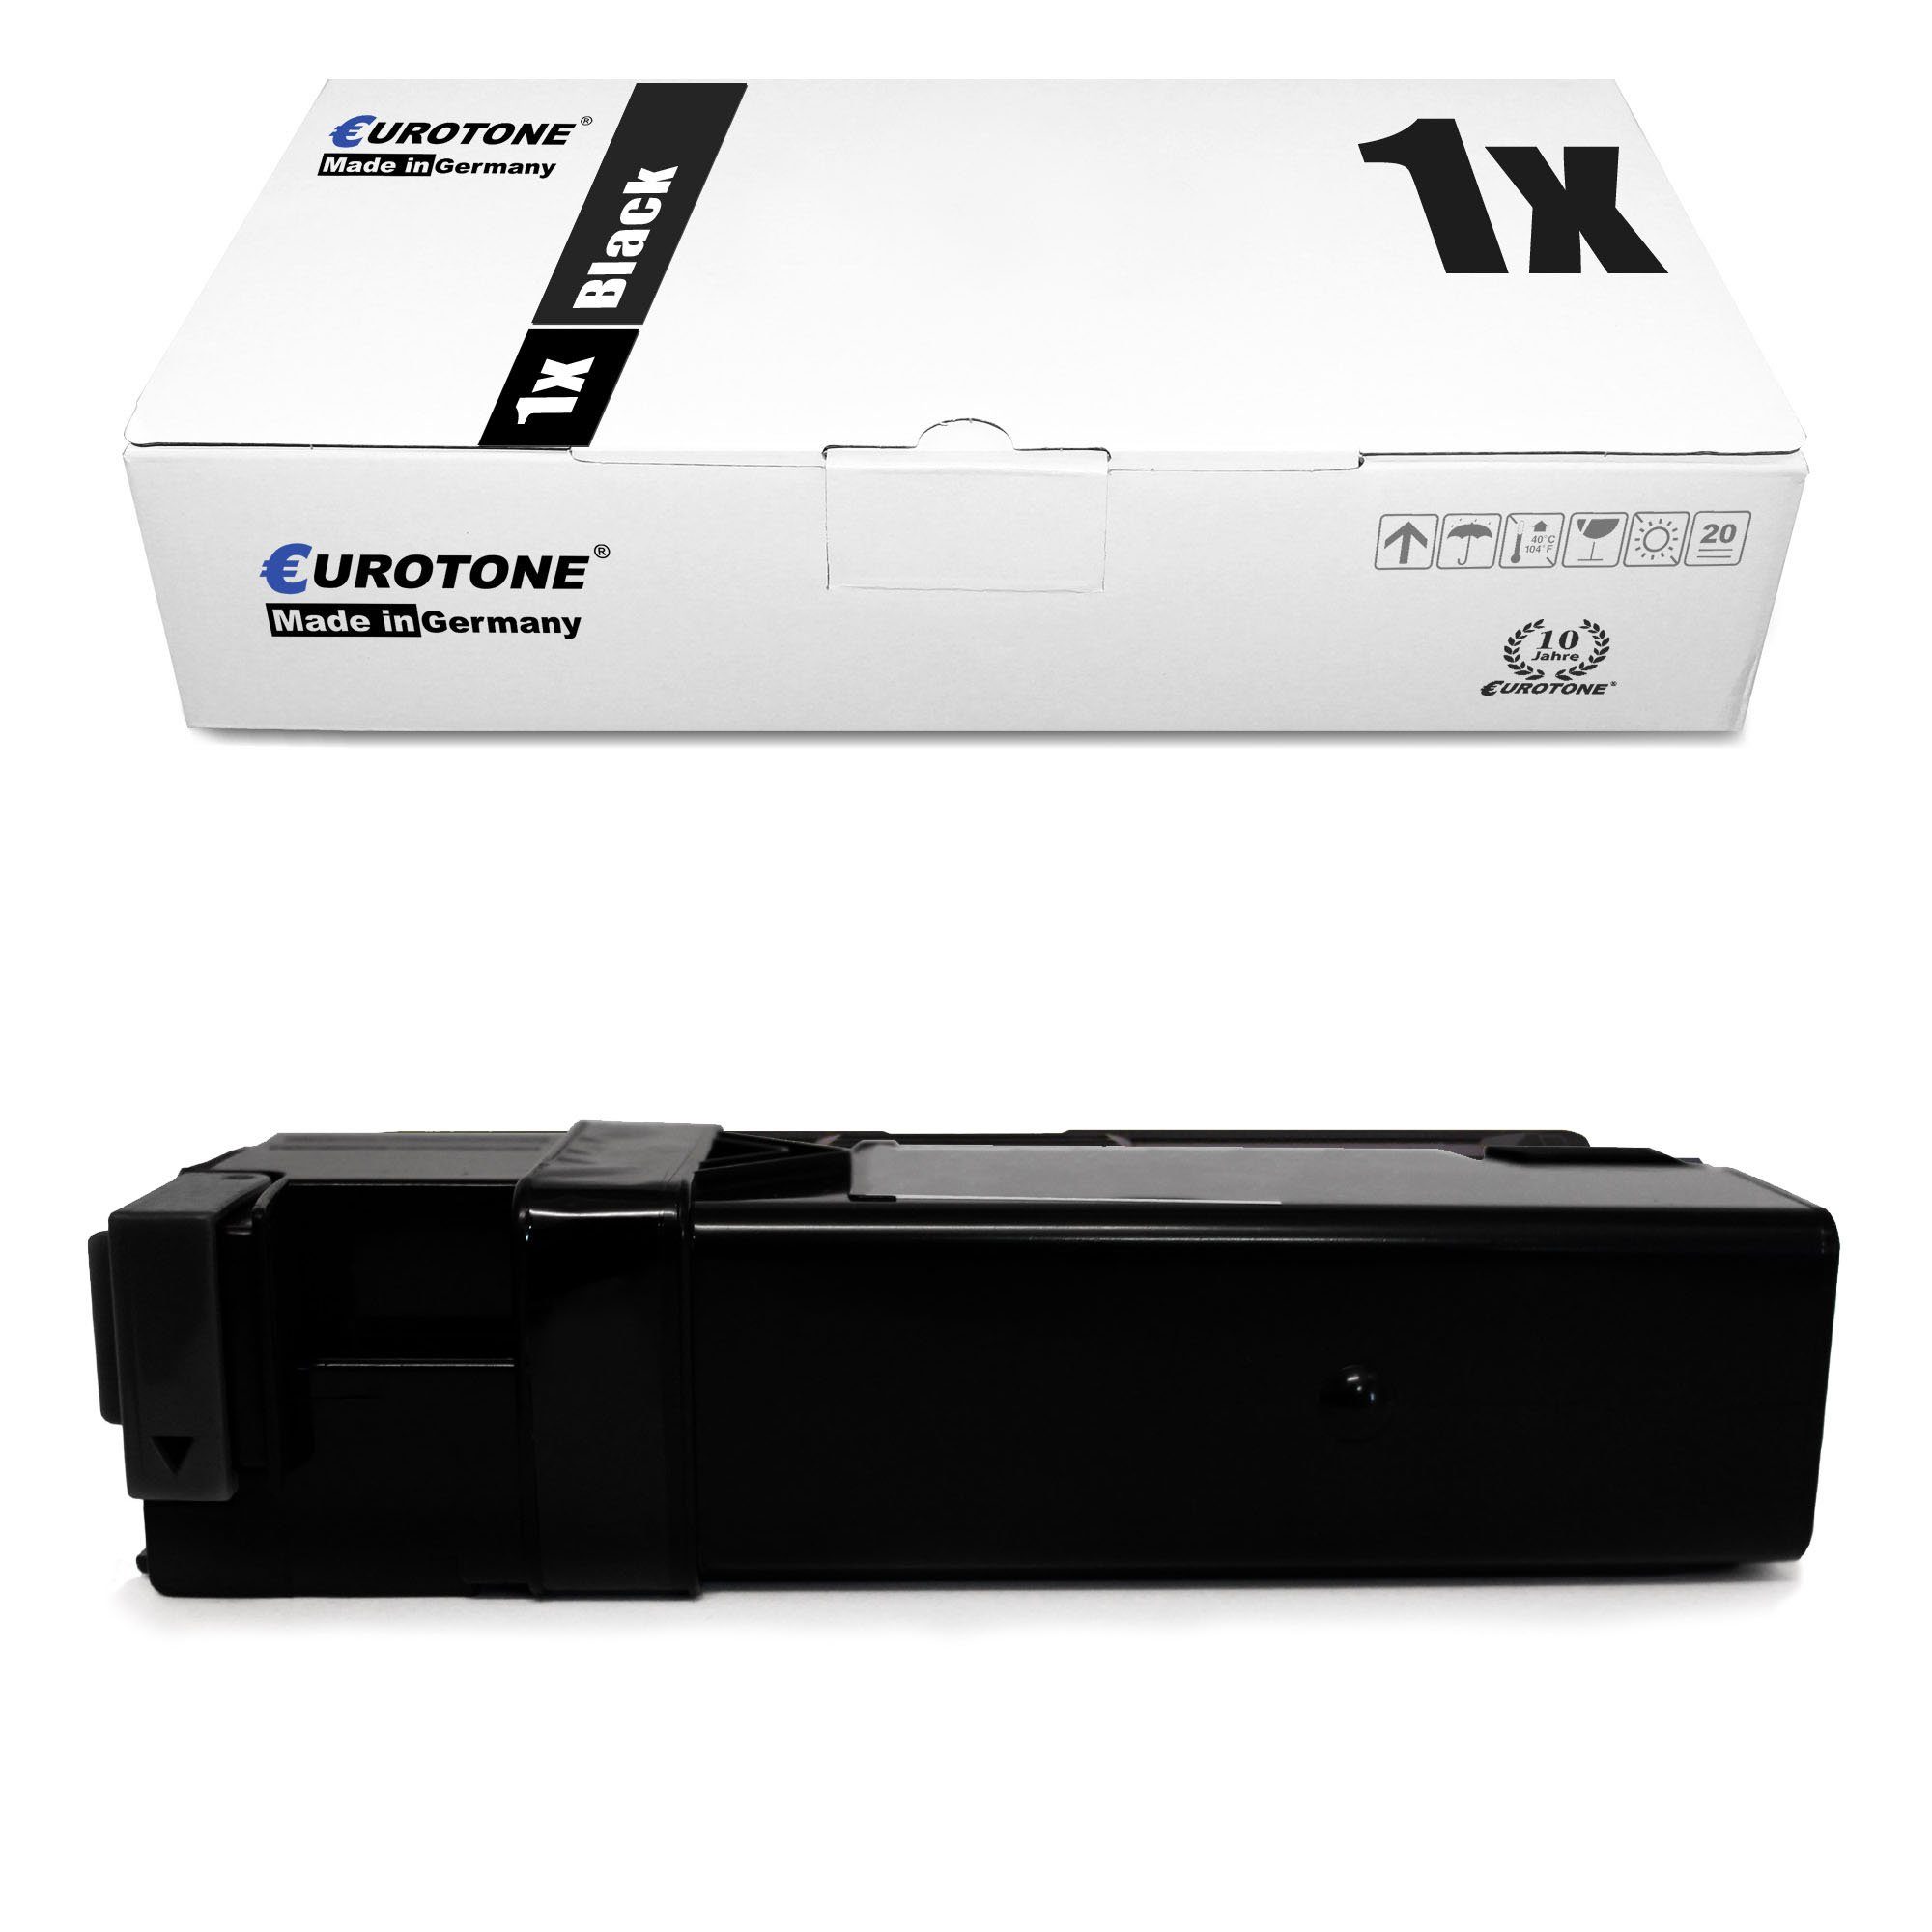 Eurotone Tonerkartusche Toner ersetzt Xerox 106R01334 Black